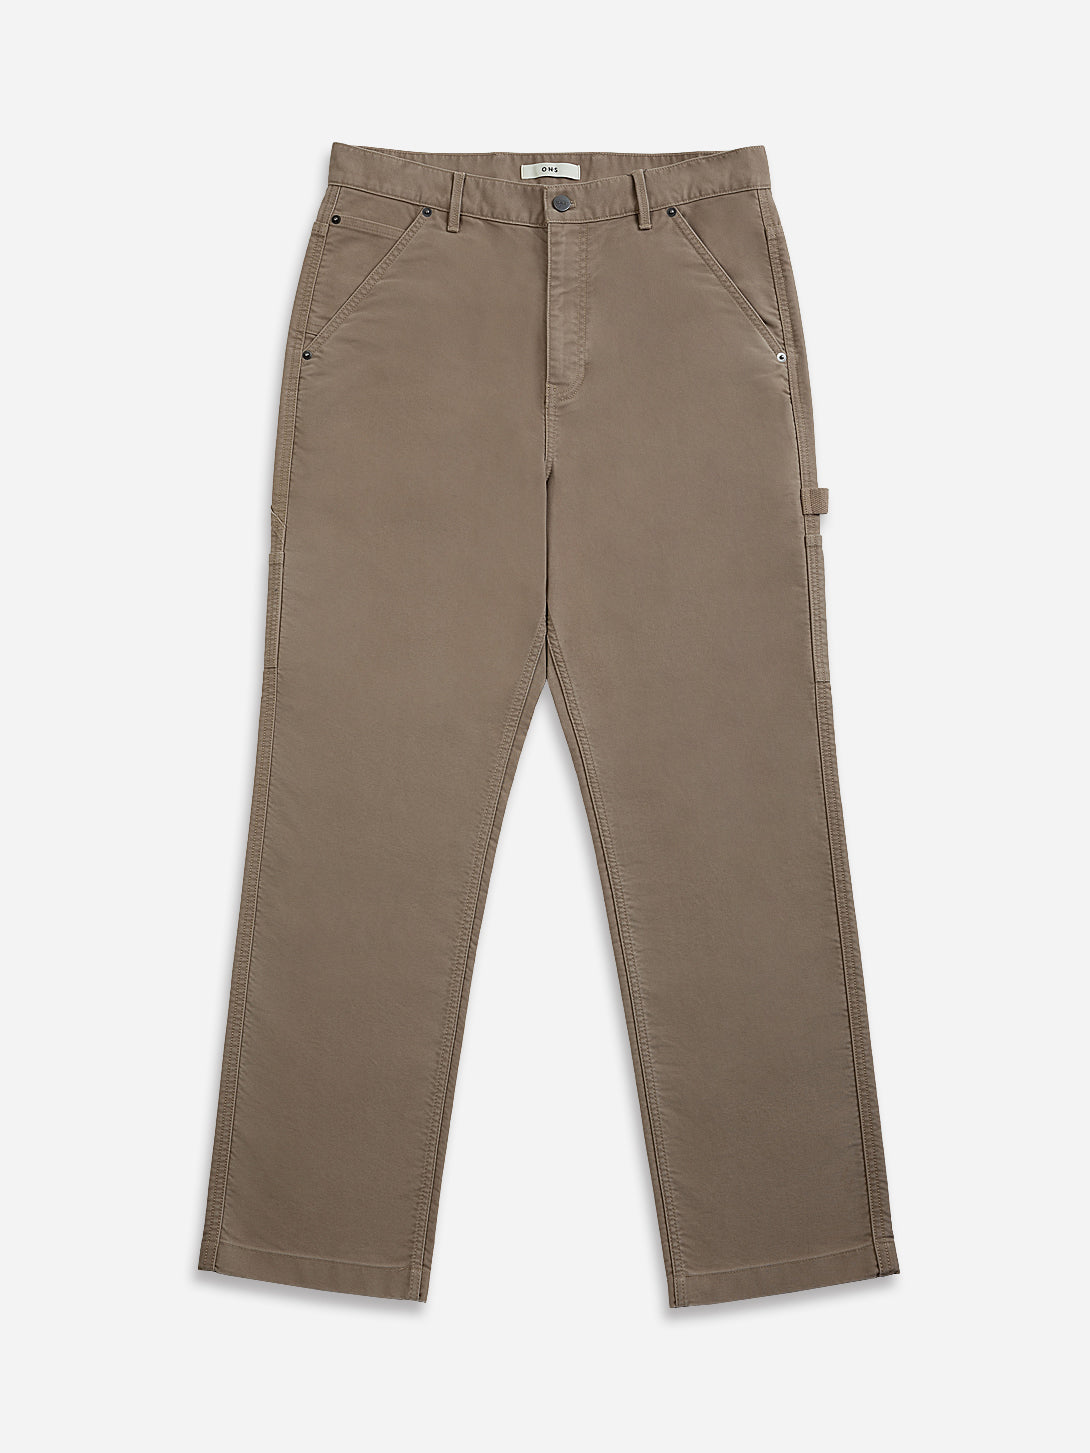 Khaki Irving Moleskin Trousers Mens Pants